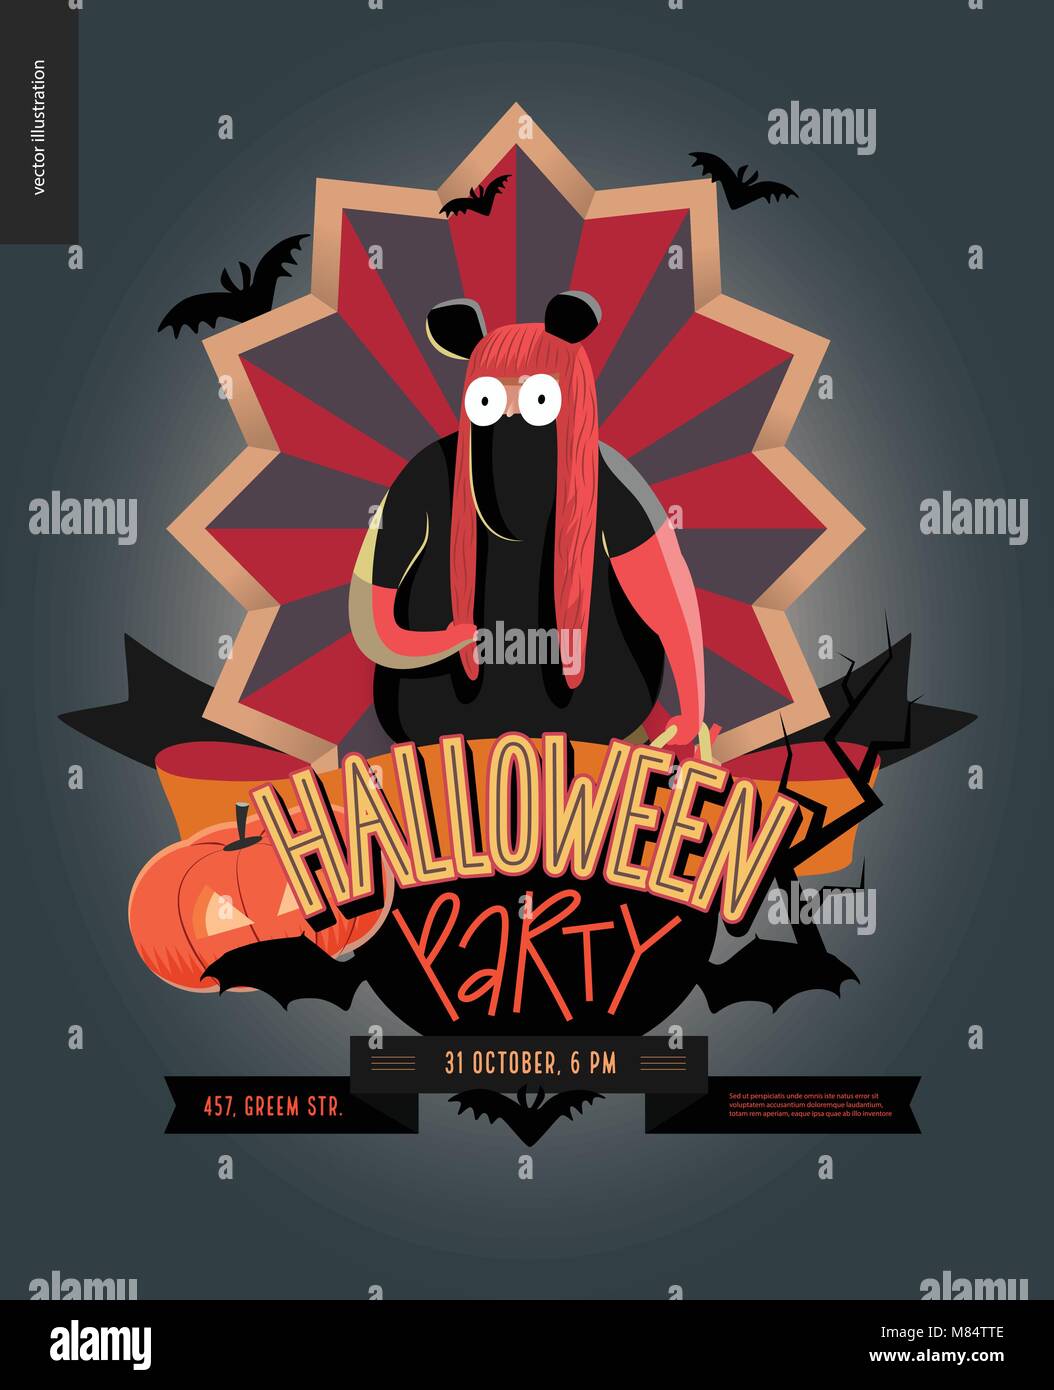 Halloween Party aus Emblem Einladung. Flache vectror Cartoon illustriert Design eines fettes Mädchen mit Maus Kostüm, auf striped Shield, Fledermäuse, Pumpe Stock Vektor